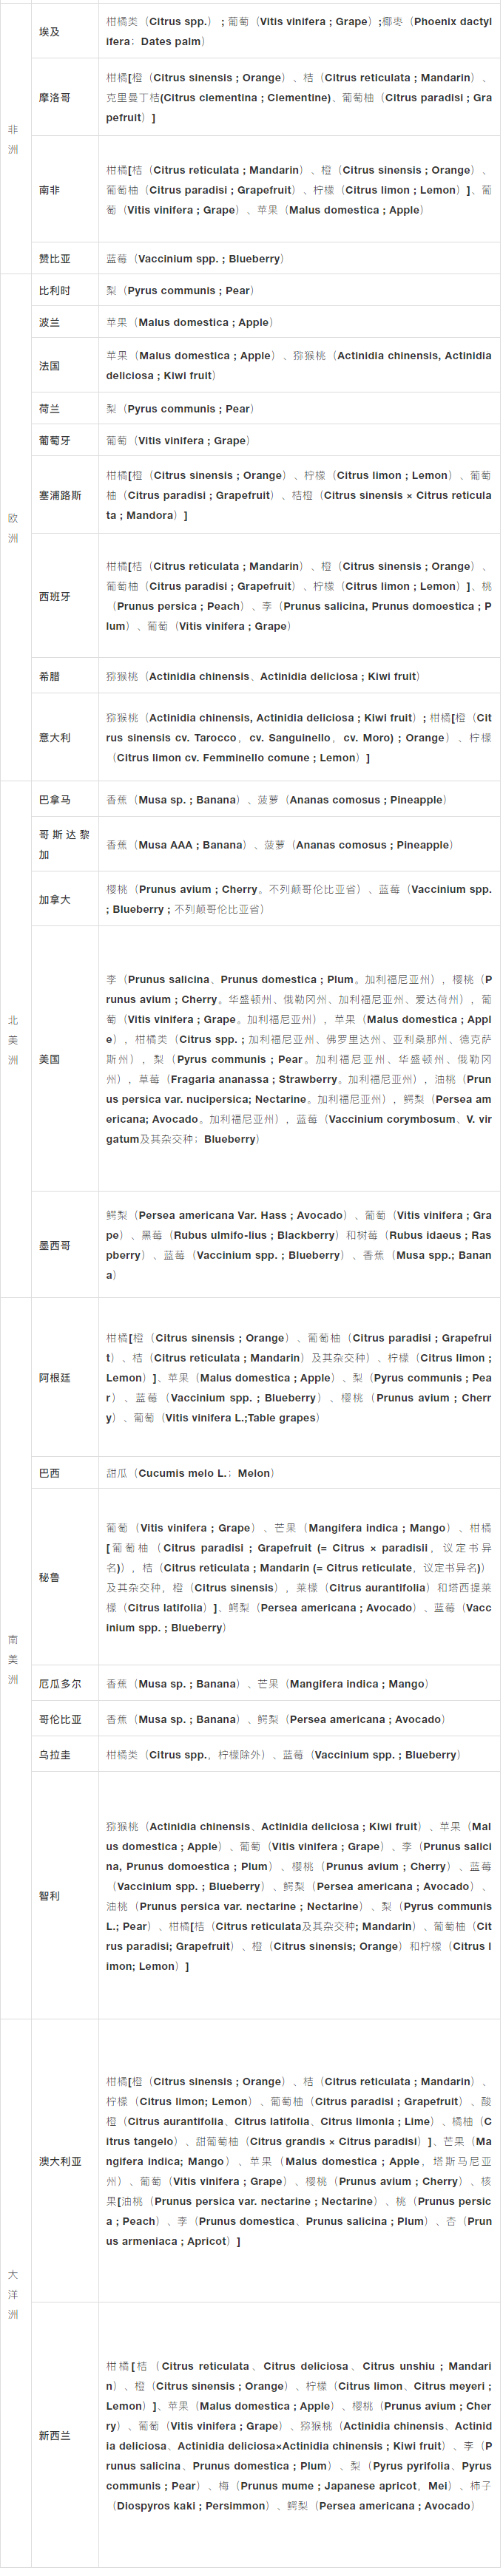 获得中国海关准入的进口水果大全（2021.3.15更新）